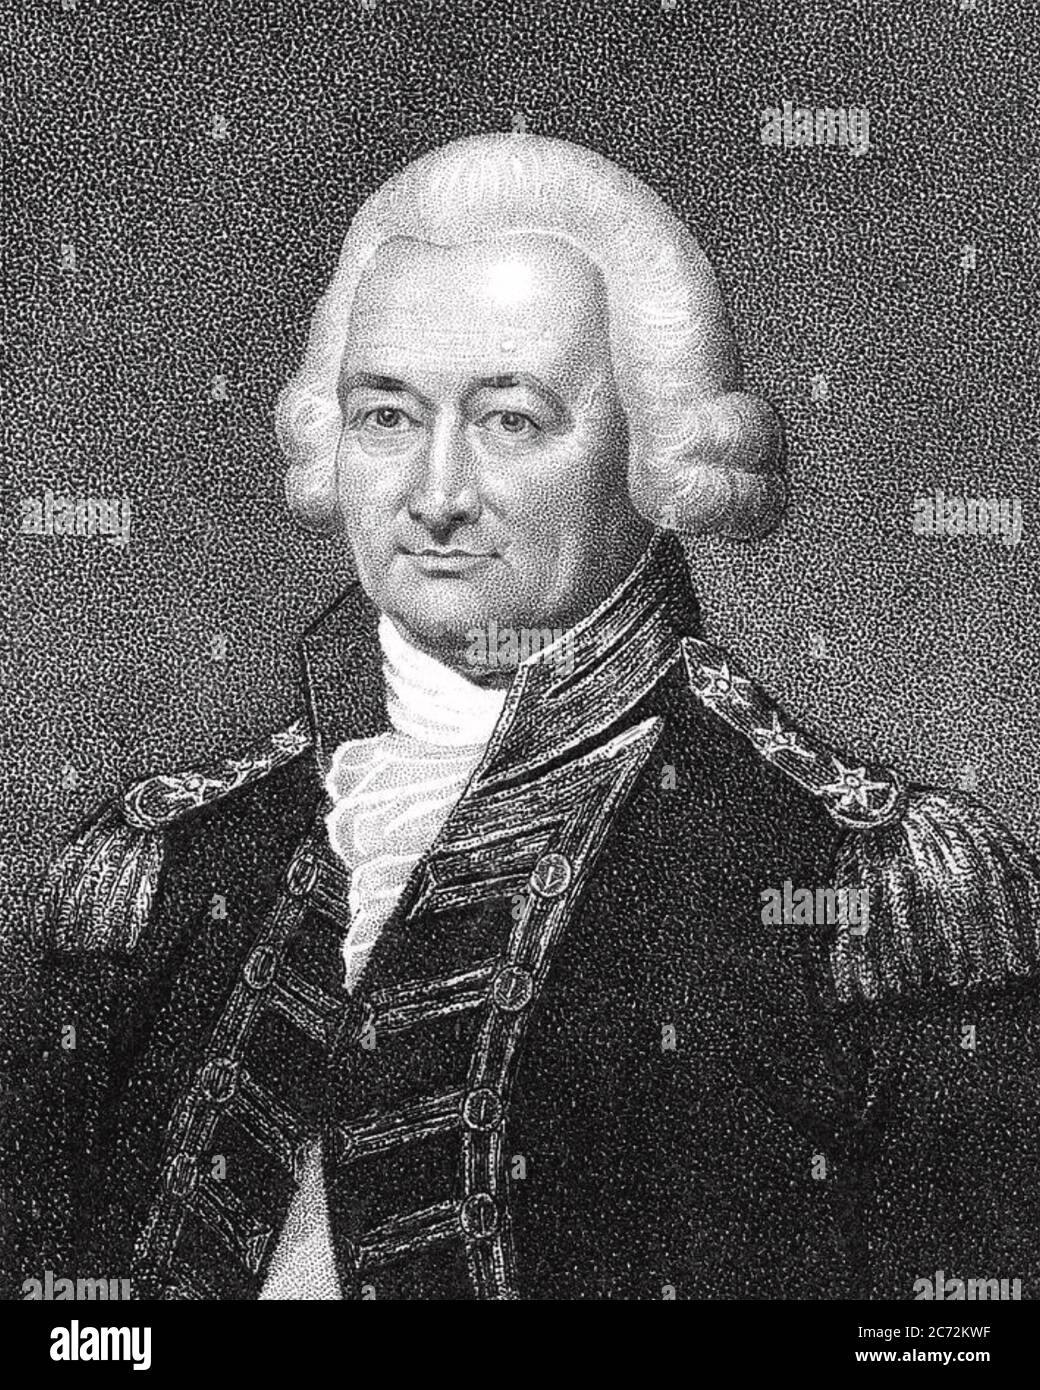 PETER PARKER, 1er baronet (1721-1811) officier supérieur de la Marine royale, vers 1800 Banque D'Images